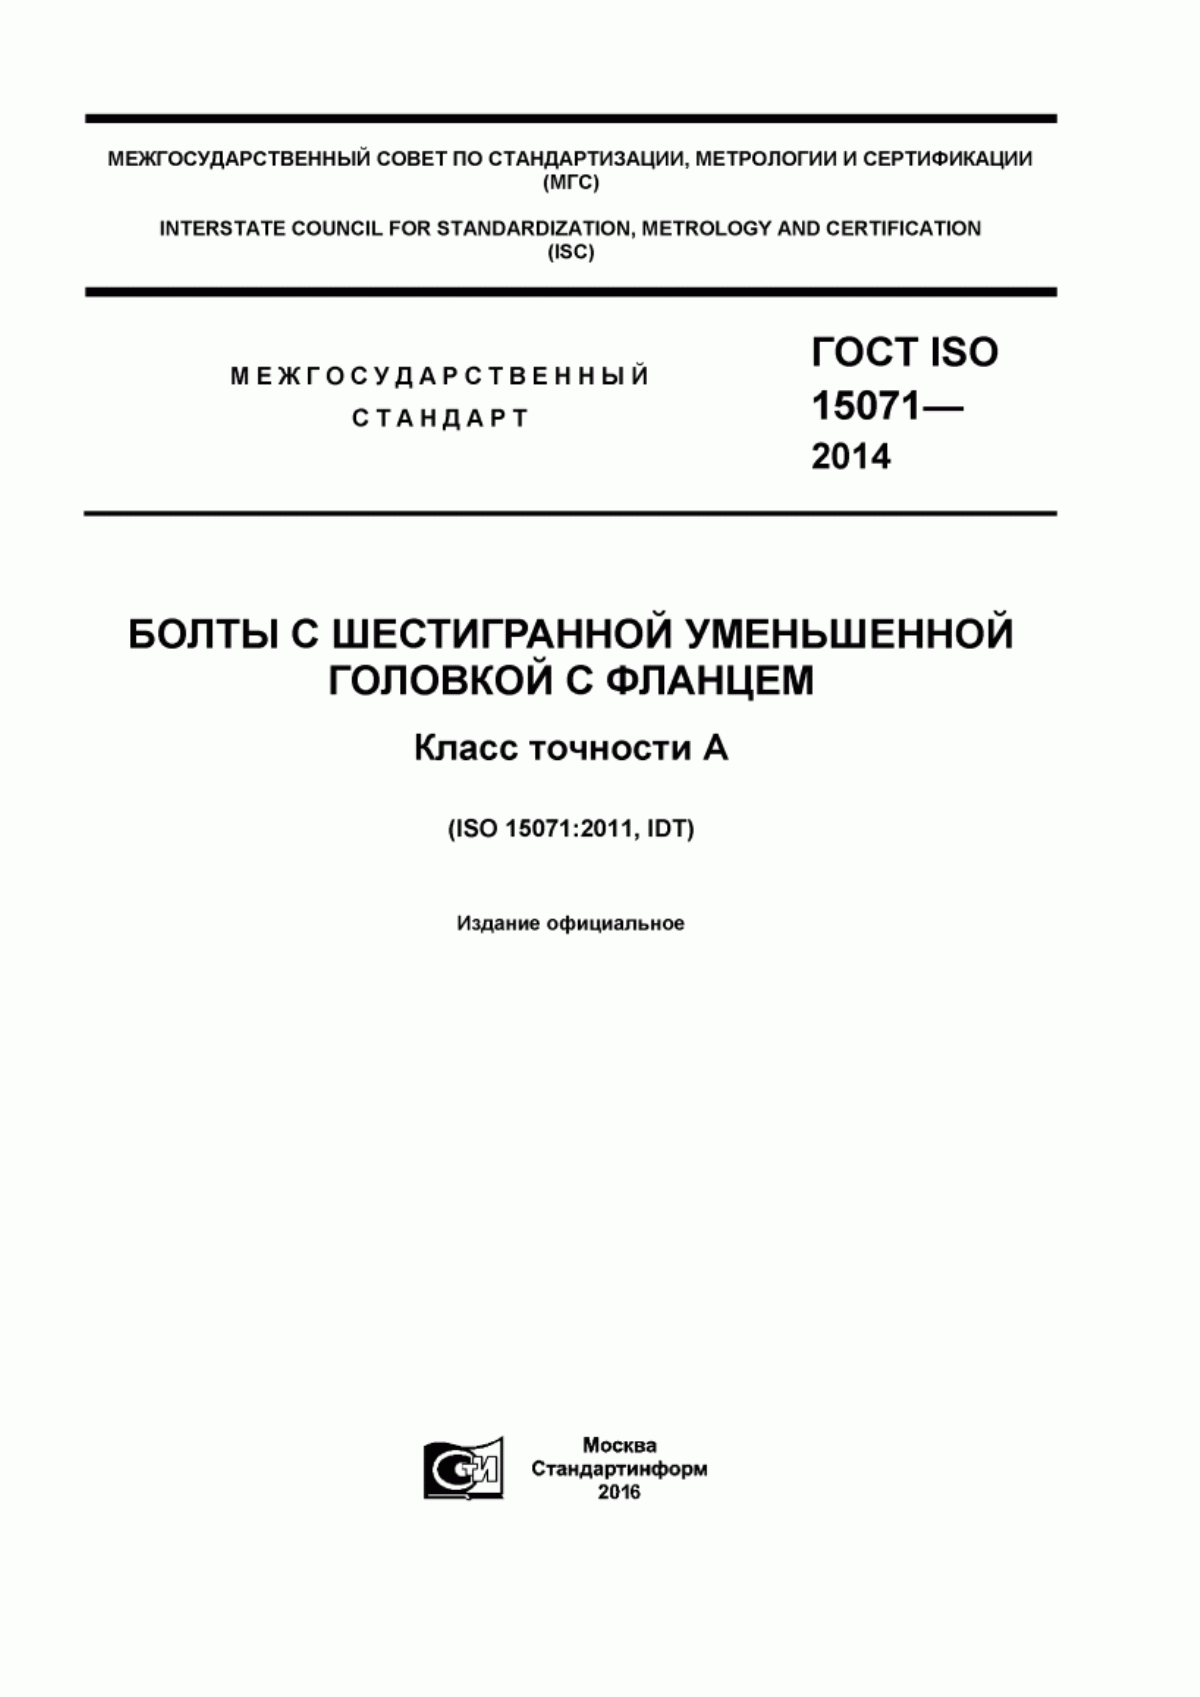 ГОСТ ISO 15071-2014 Болты с шестигранной уменьшенной головкой с фланцем. Класс точности А